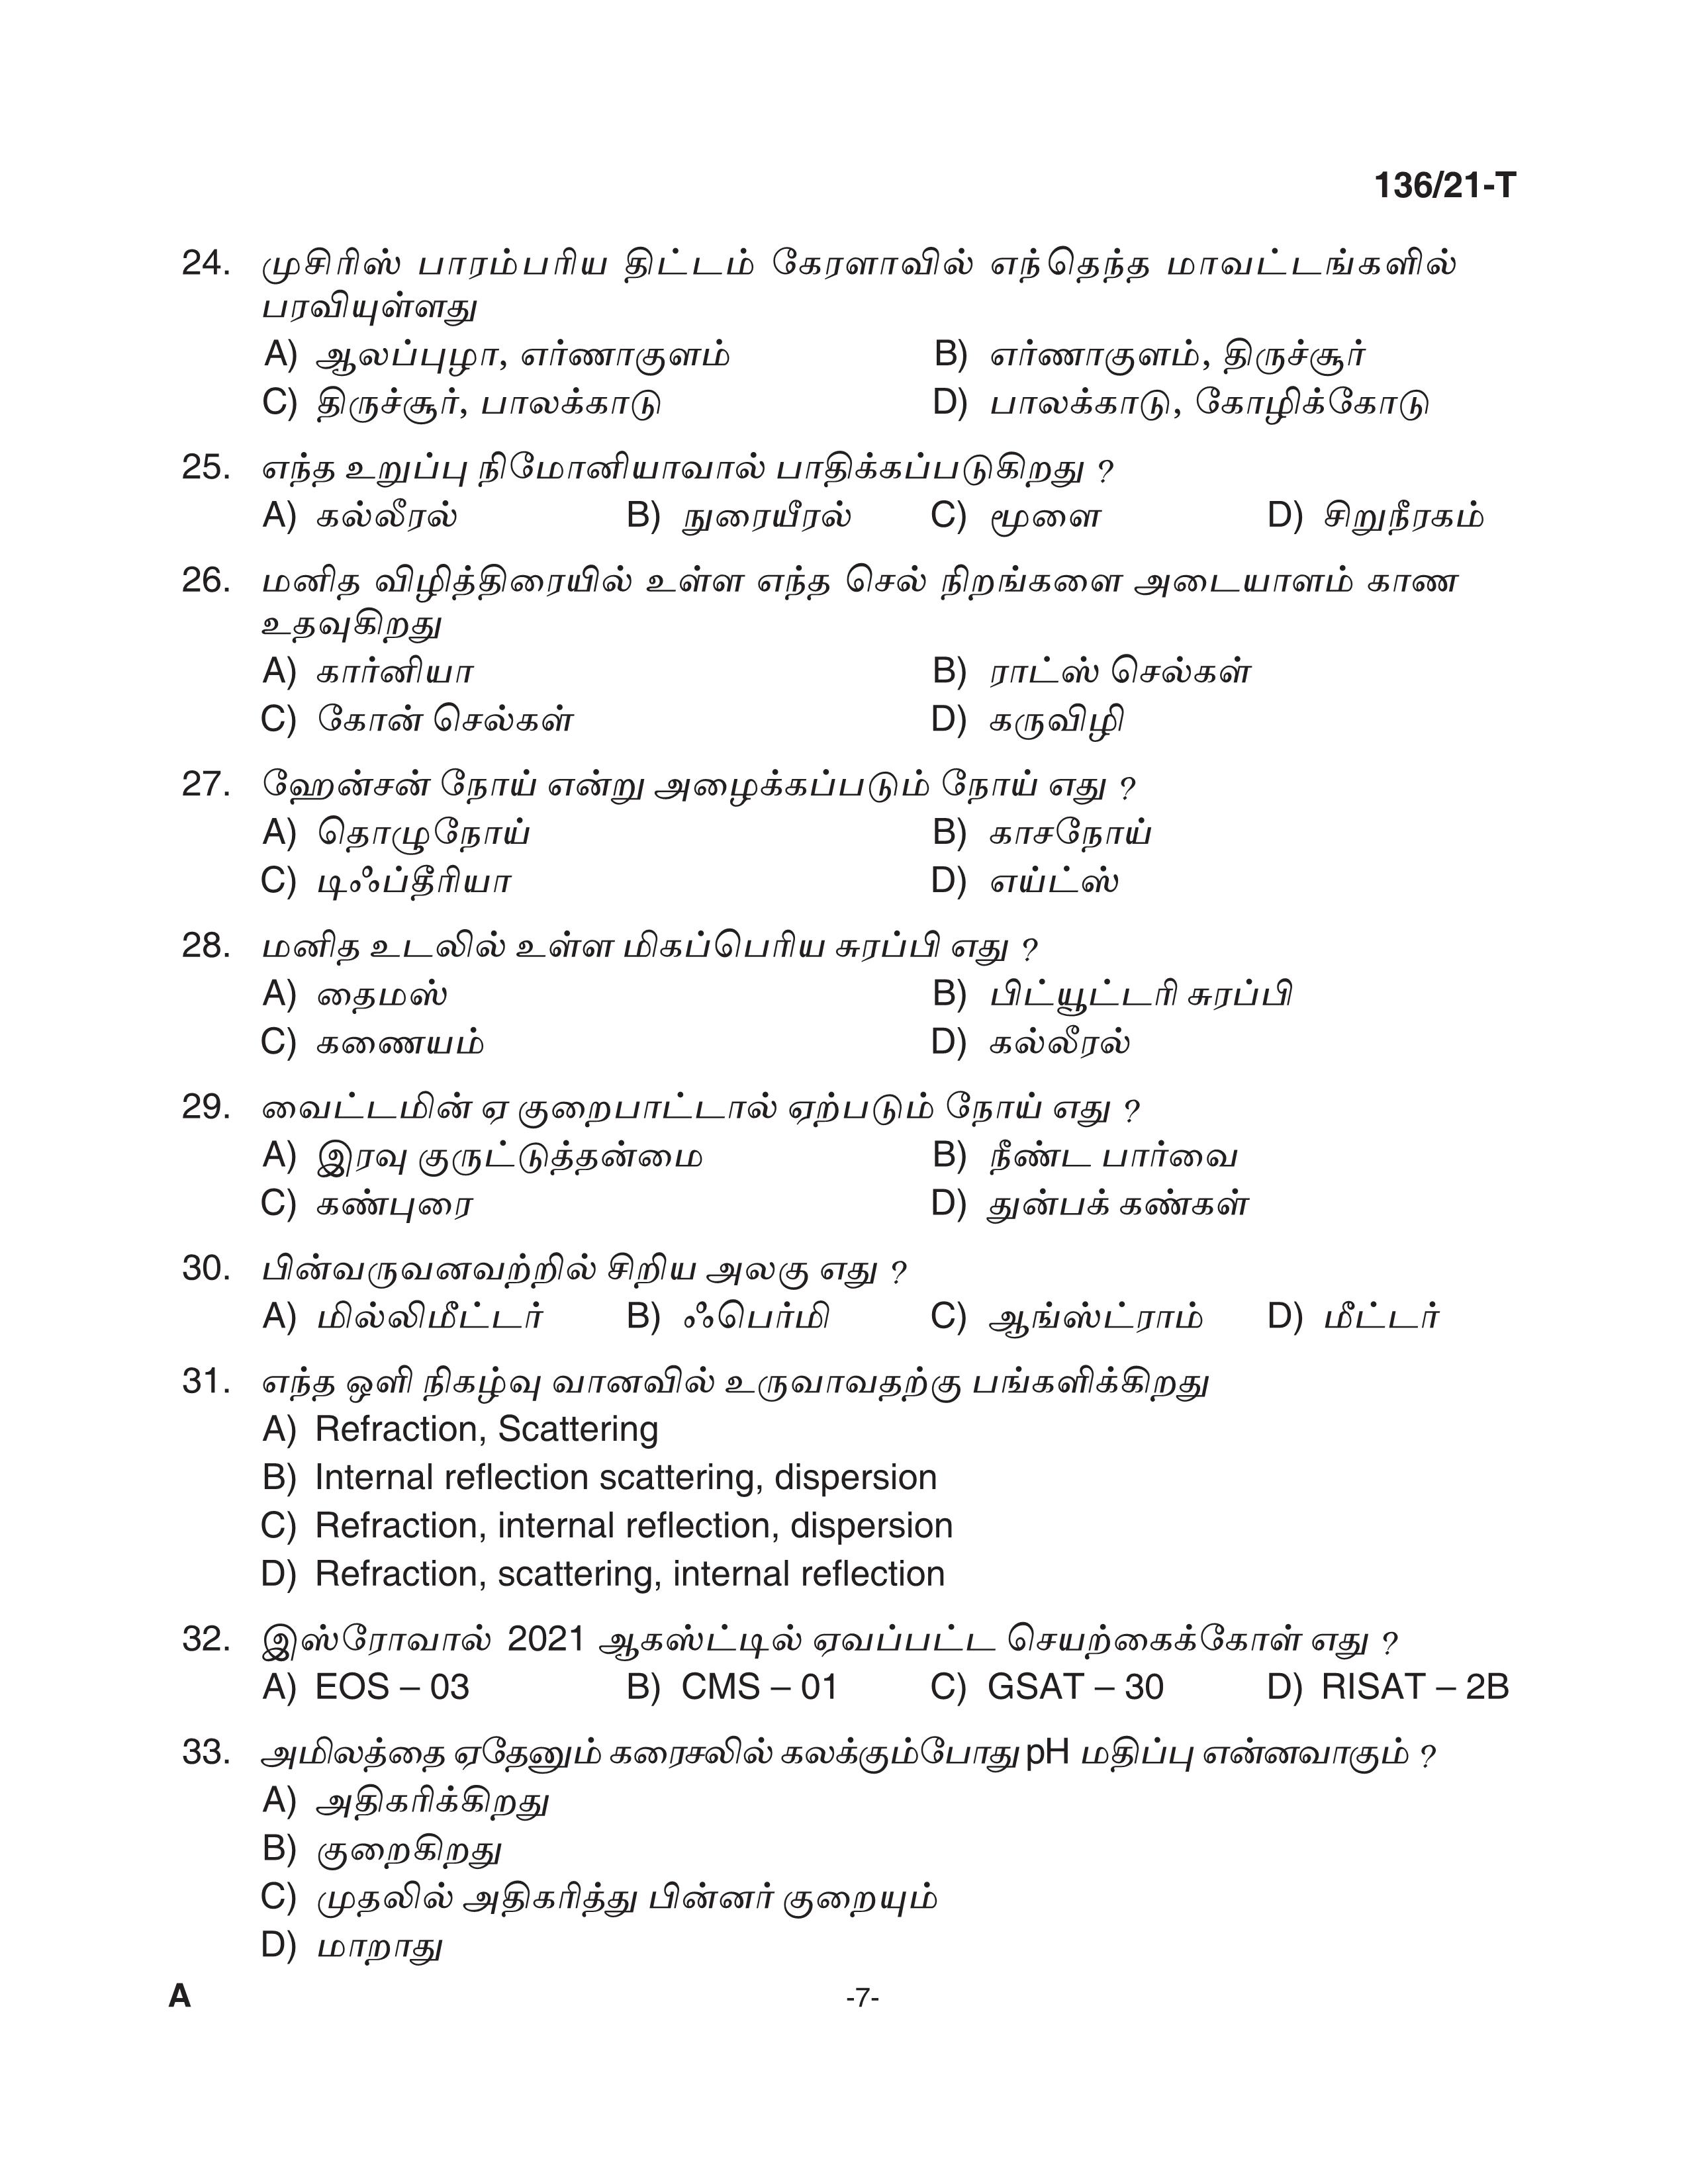 KPSC Village Extension Officer Tamil Exam 2021 Code 1362021 T 6